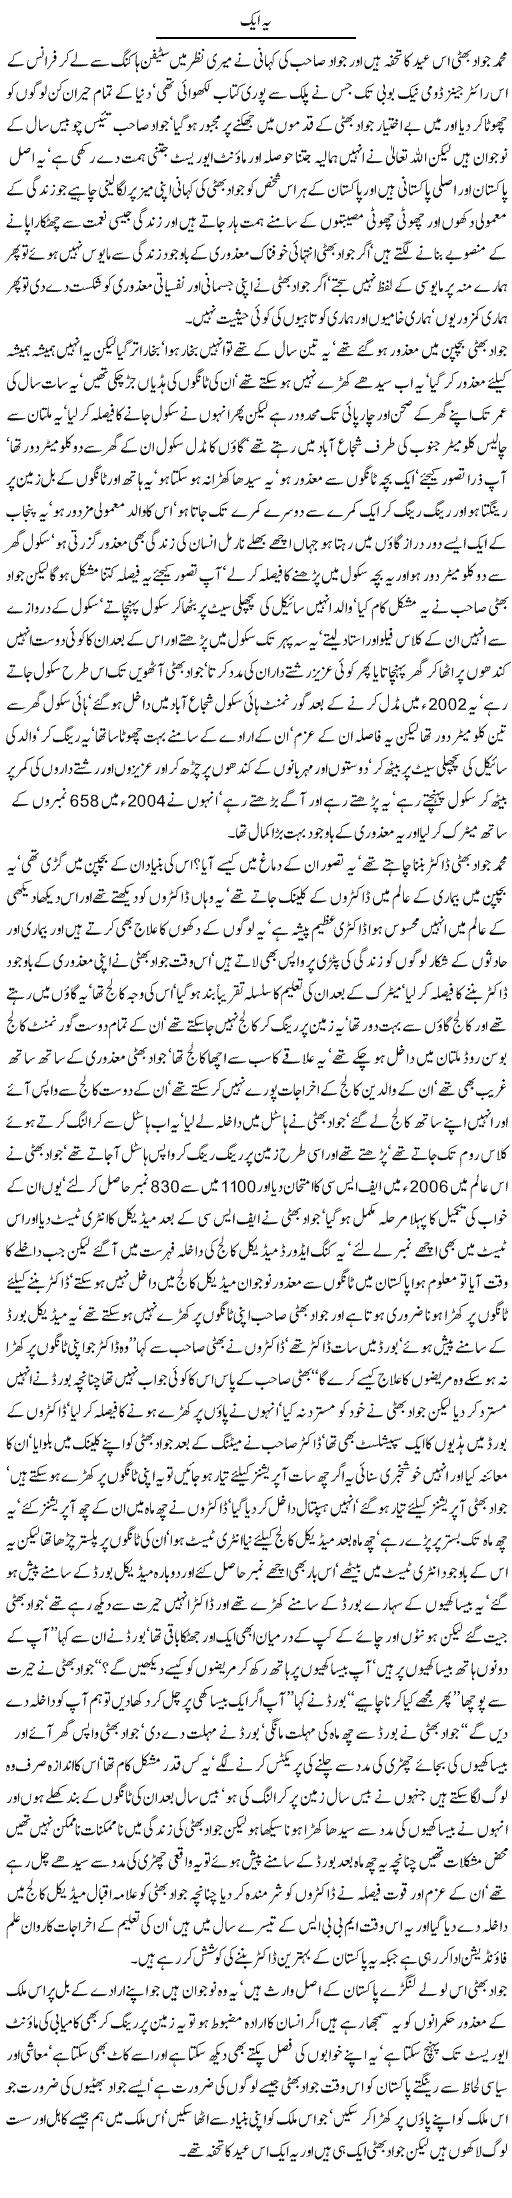 Story of Jawad Express Column Javed Chaudhry 11 November 2011